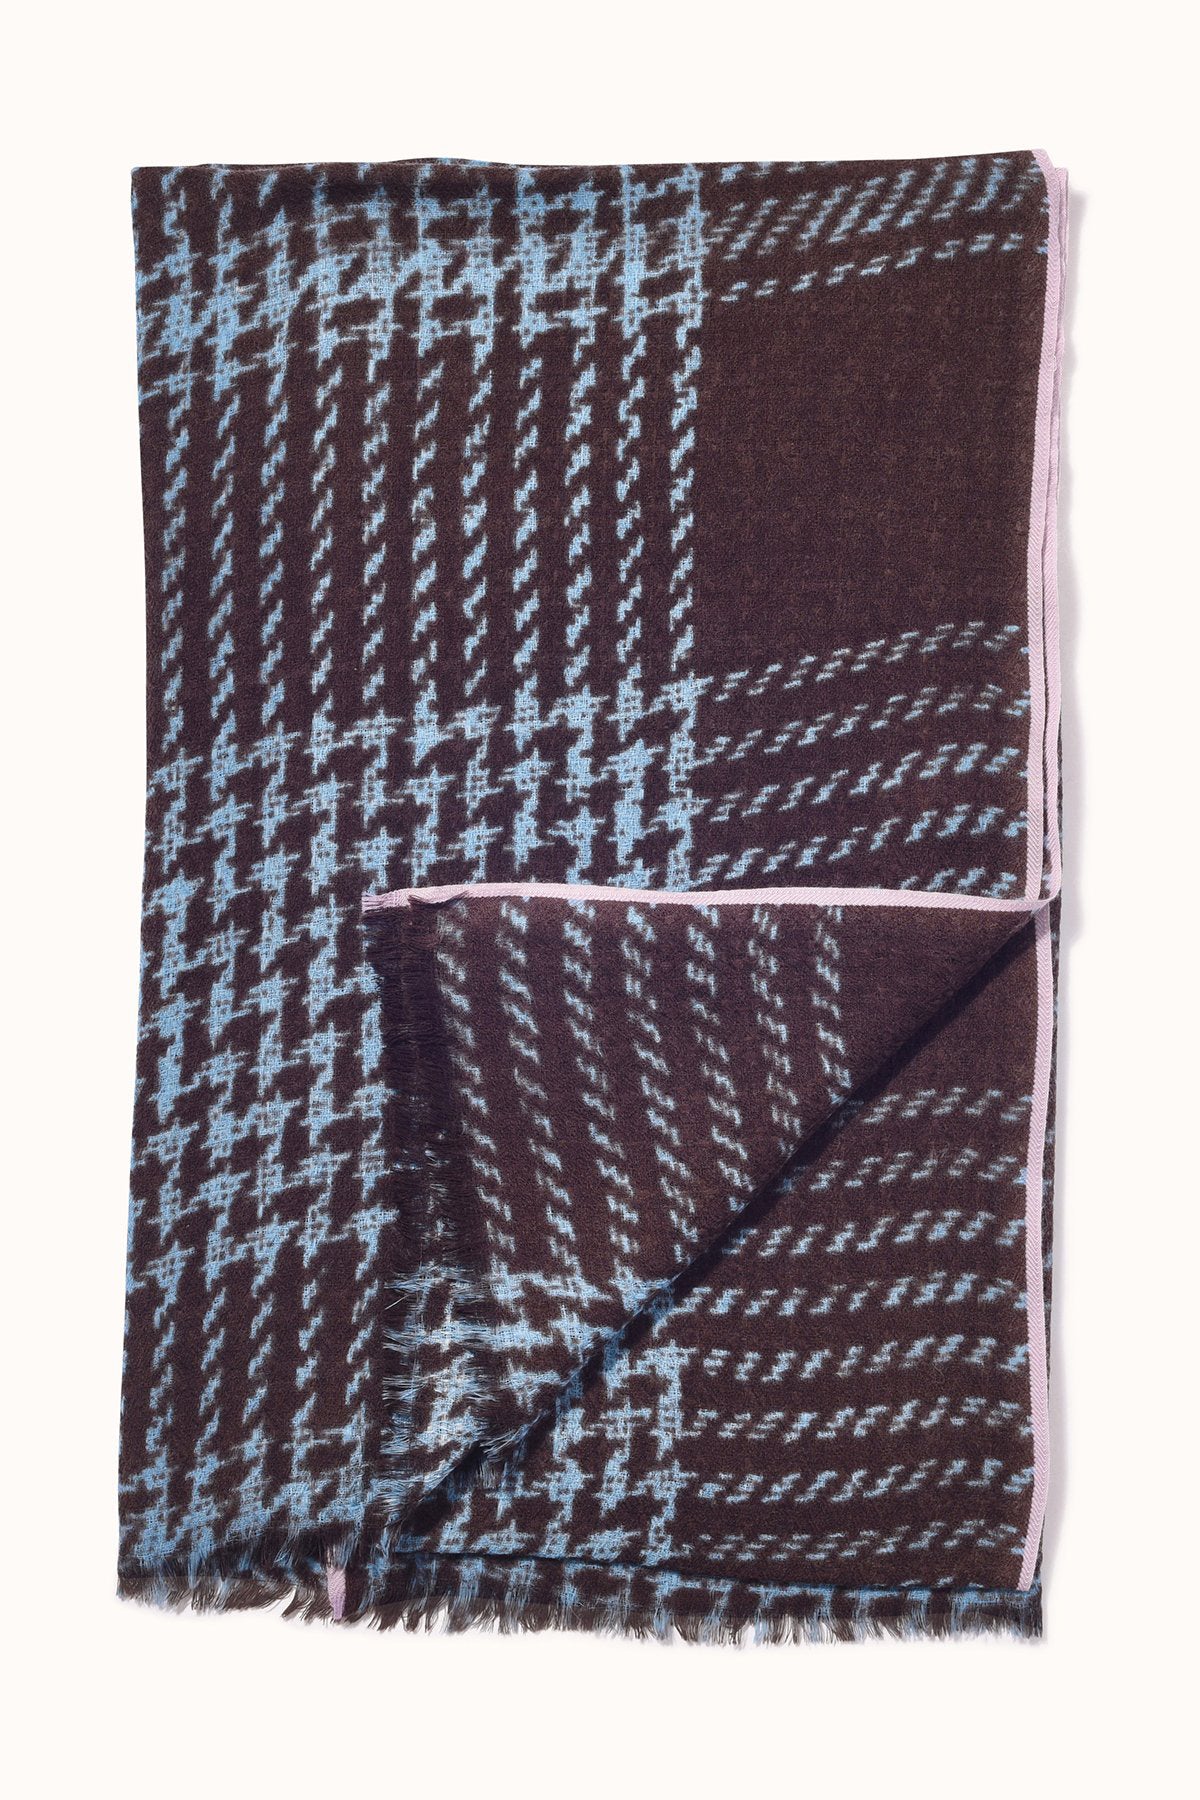 Tweed Check Wool Scarf Dark Chocolate-23384121442497